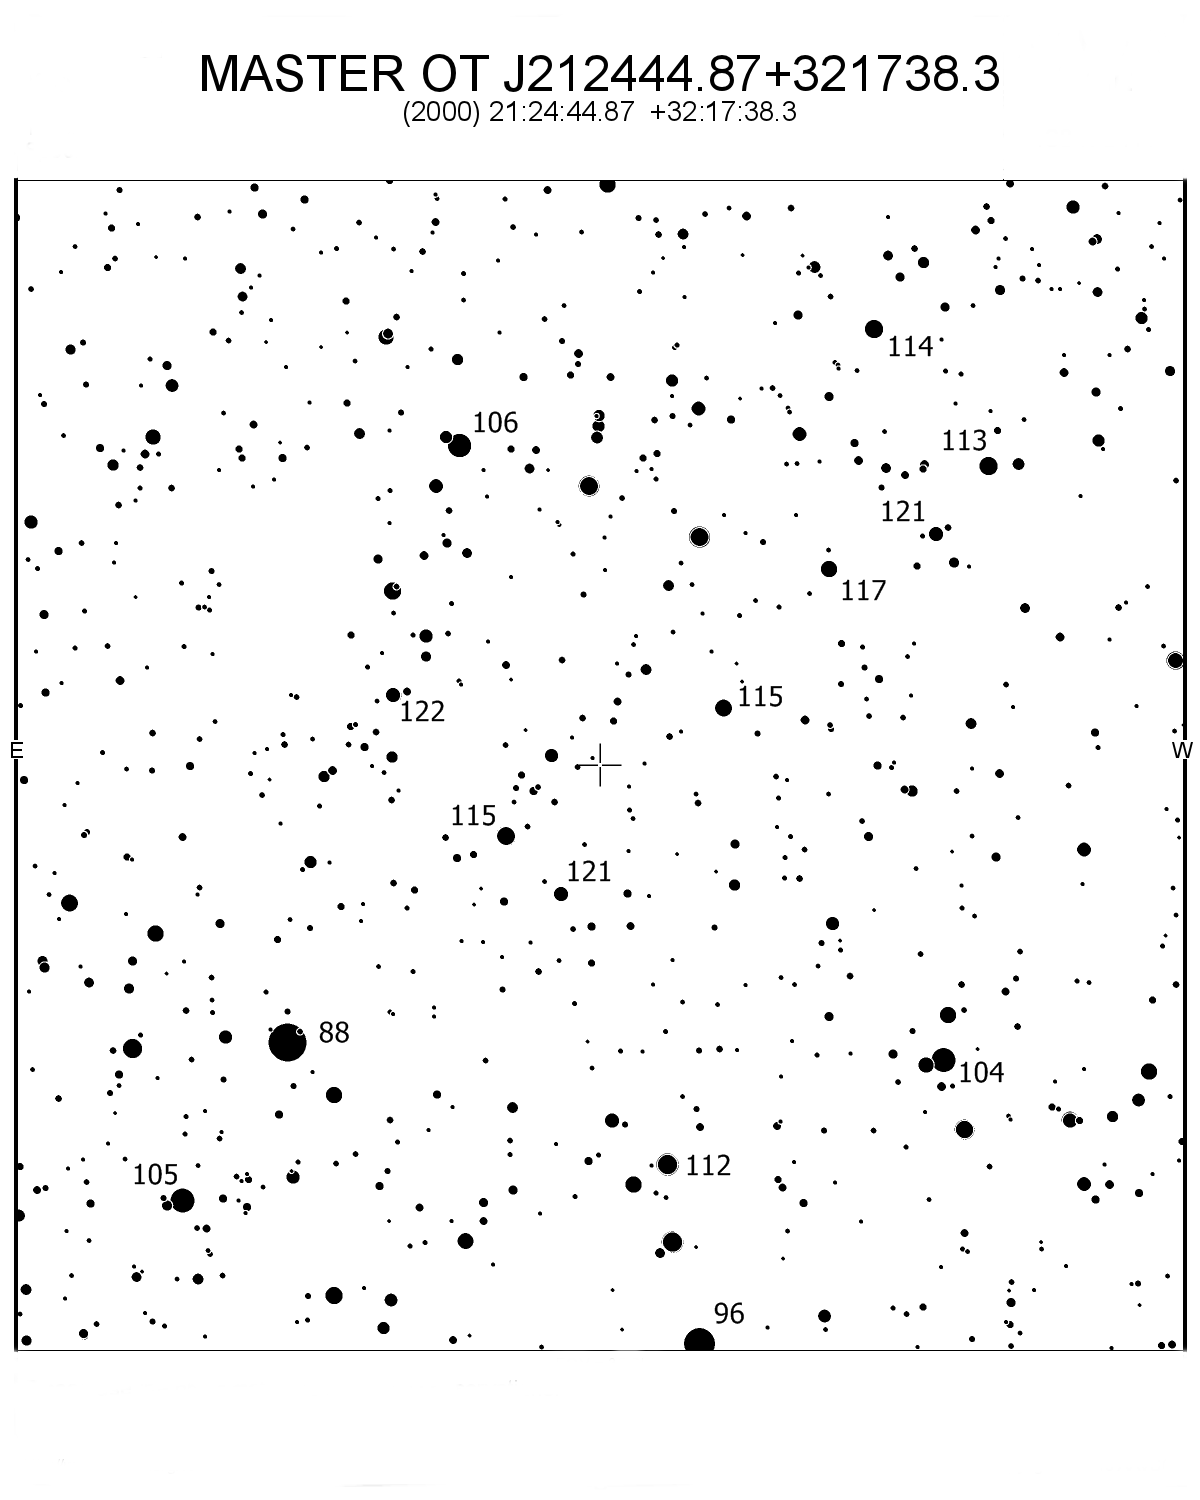 MASTER OT J212444.87+321738.3. Visuella magnituder enligt Tycho-2. Grundkarta: AAVSO VSP.